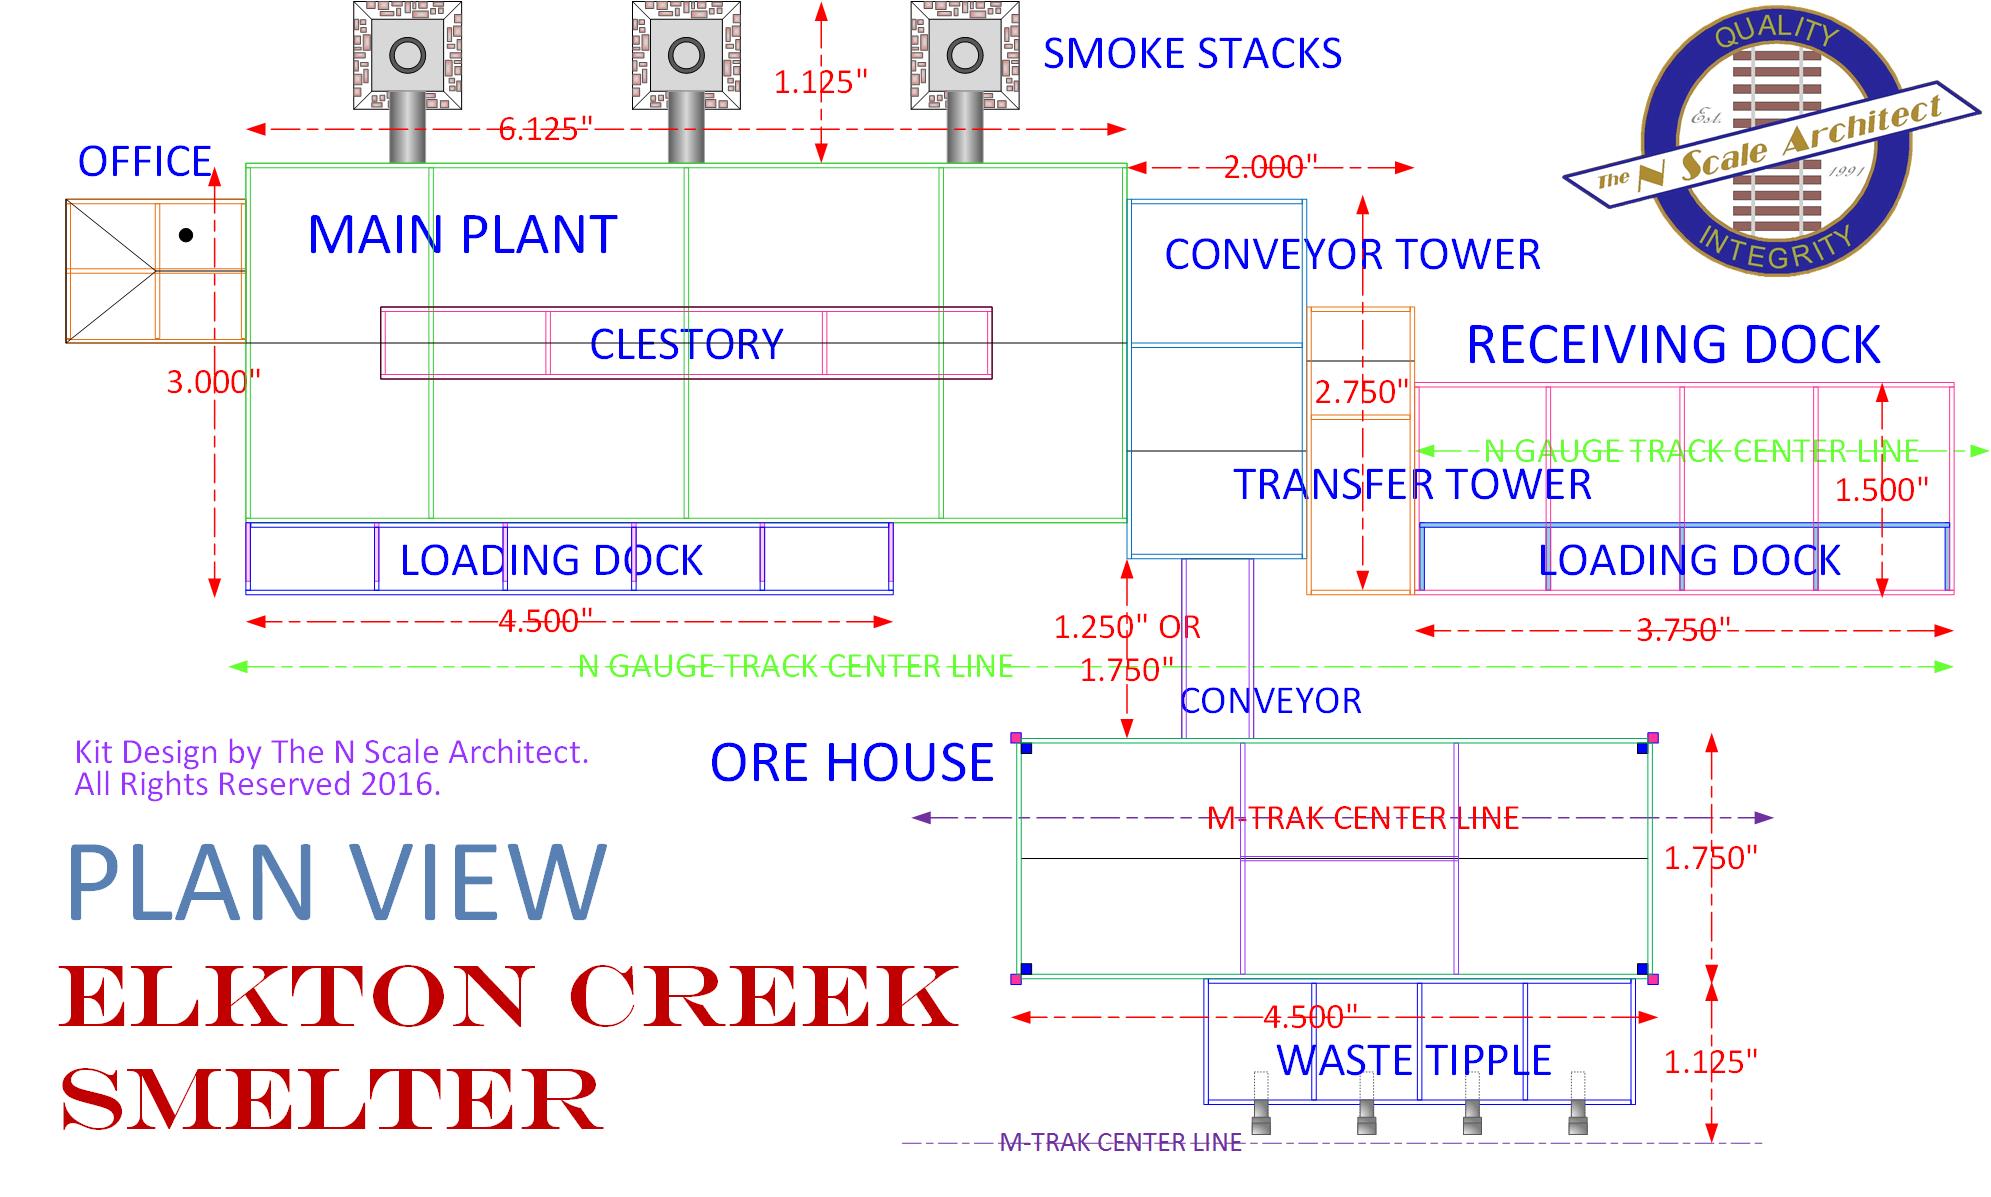 Elkton Creek Smelter - Plan View